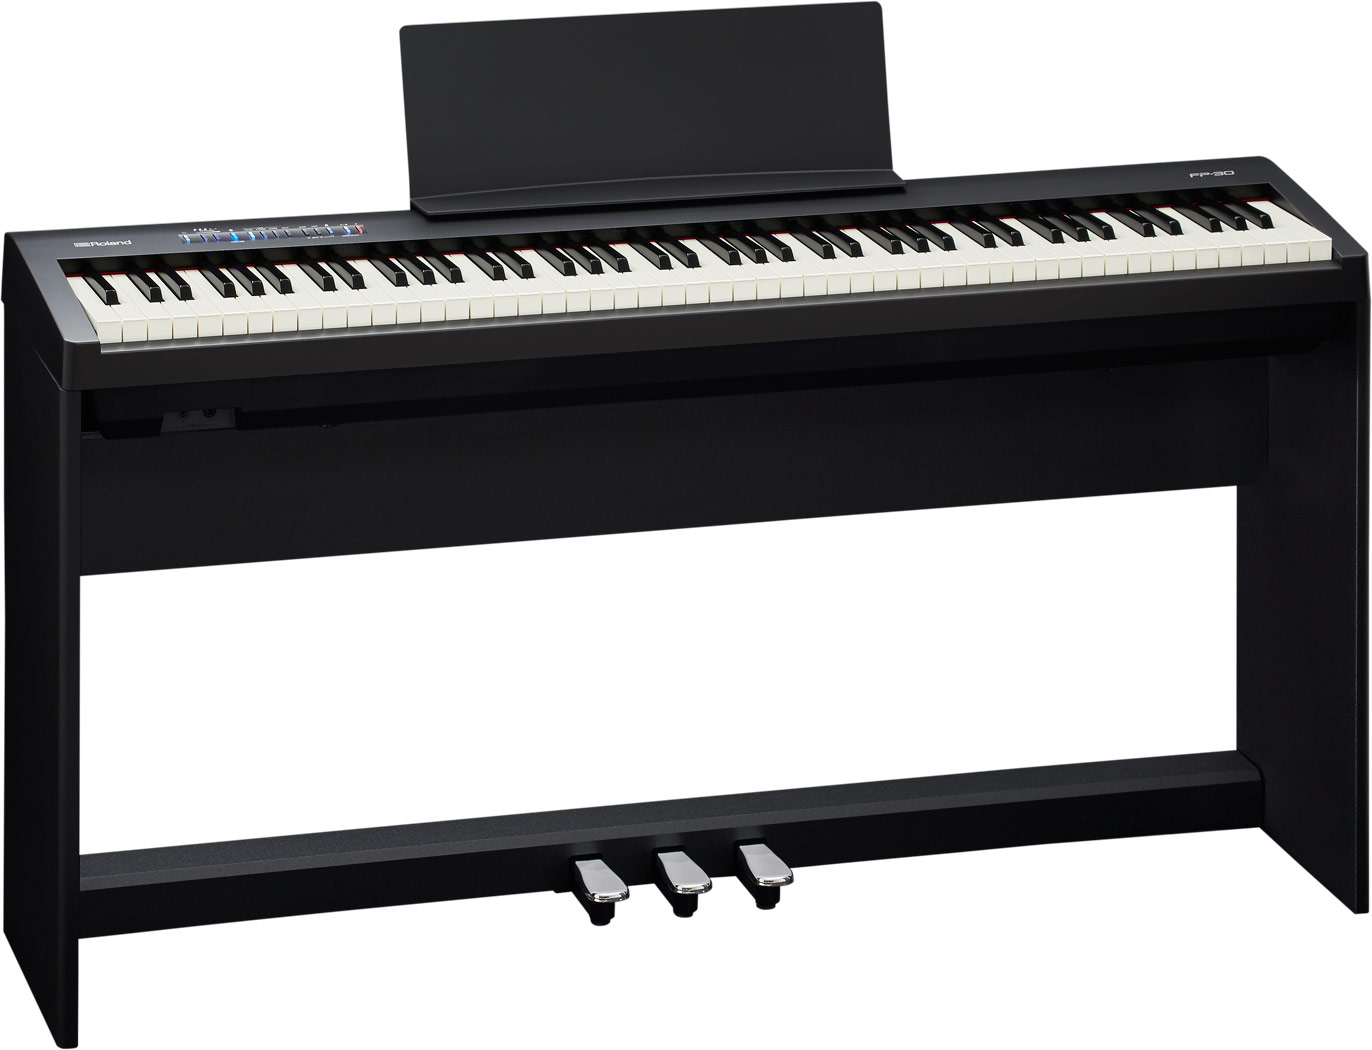 【バイヤーオススメセット】 Roland(ローランド) / FP-30-BK - Bluetooth対応 ポータブル・電子ピアノ - 【88鍵盤】